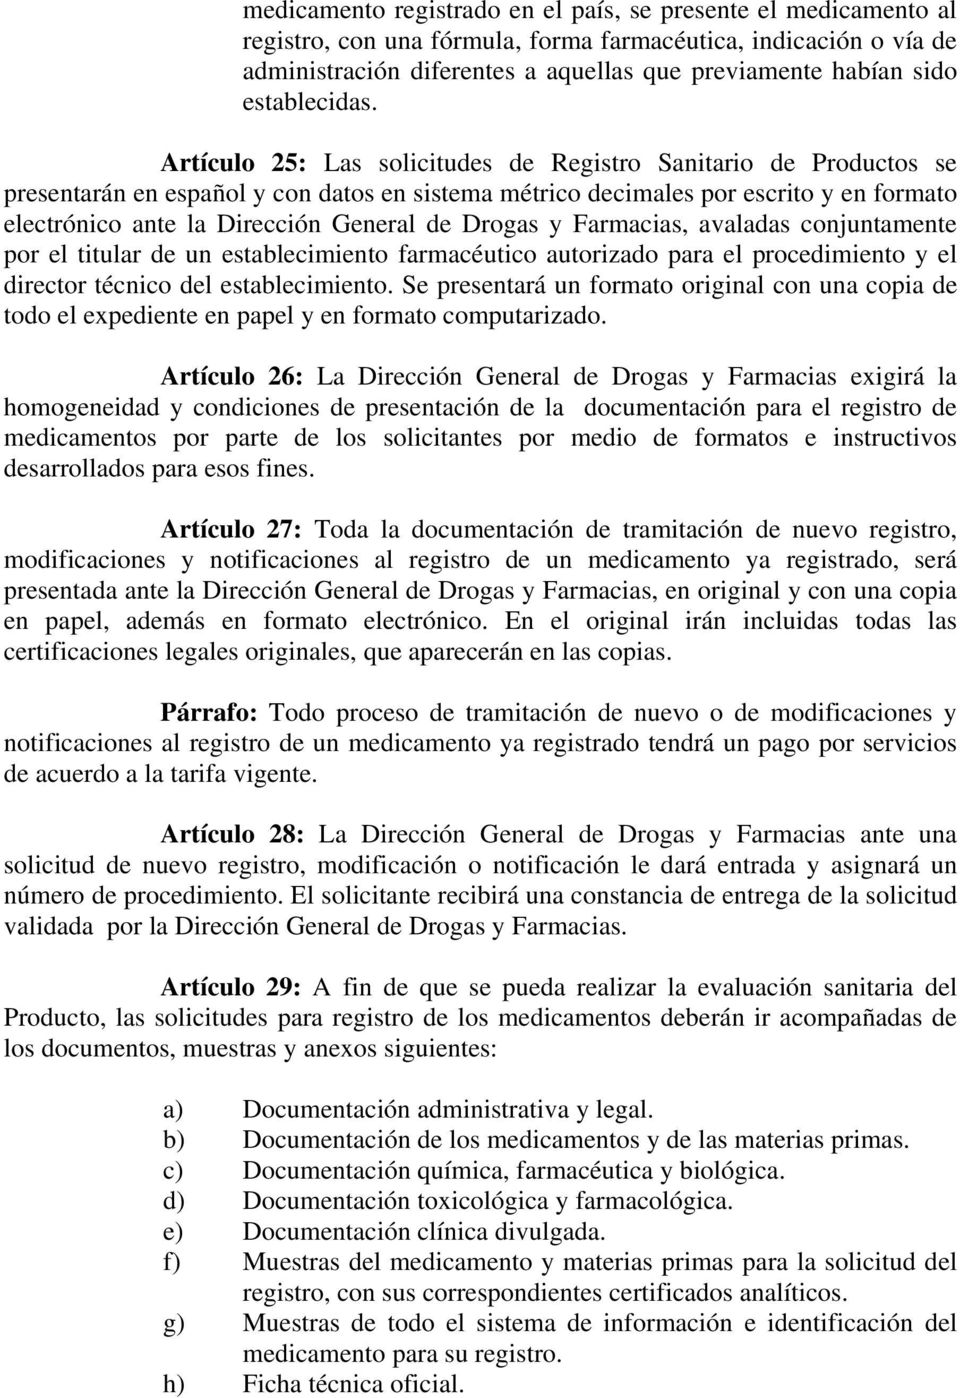 Artículo 25: Las solicitudes de Registro Sanitario de Productos se presentarán en español y con datos en sistema métrico decimales por escrito y en formato electrónico ante la Dirección General de